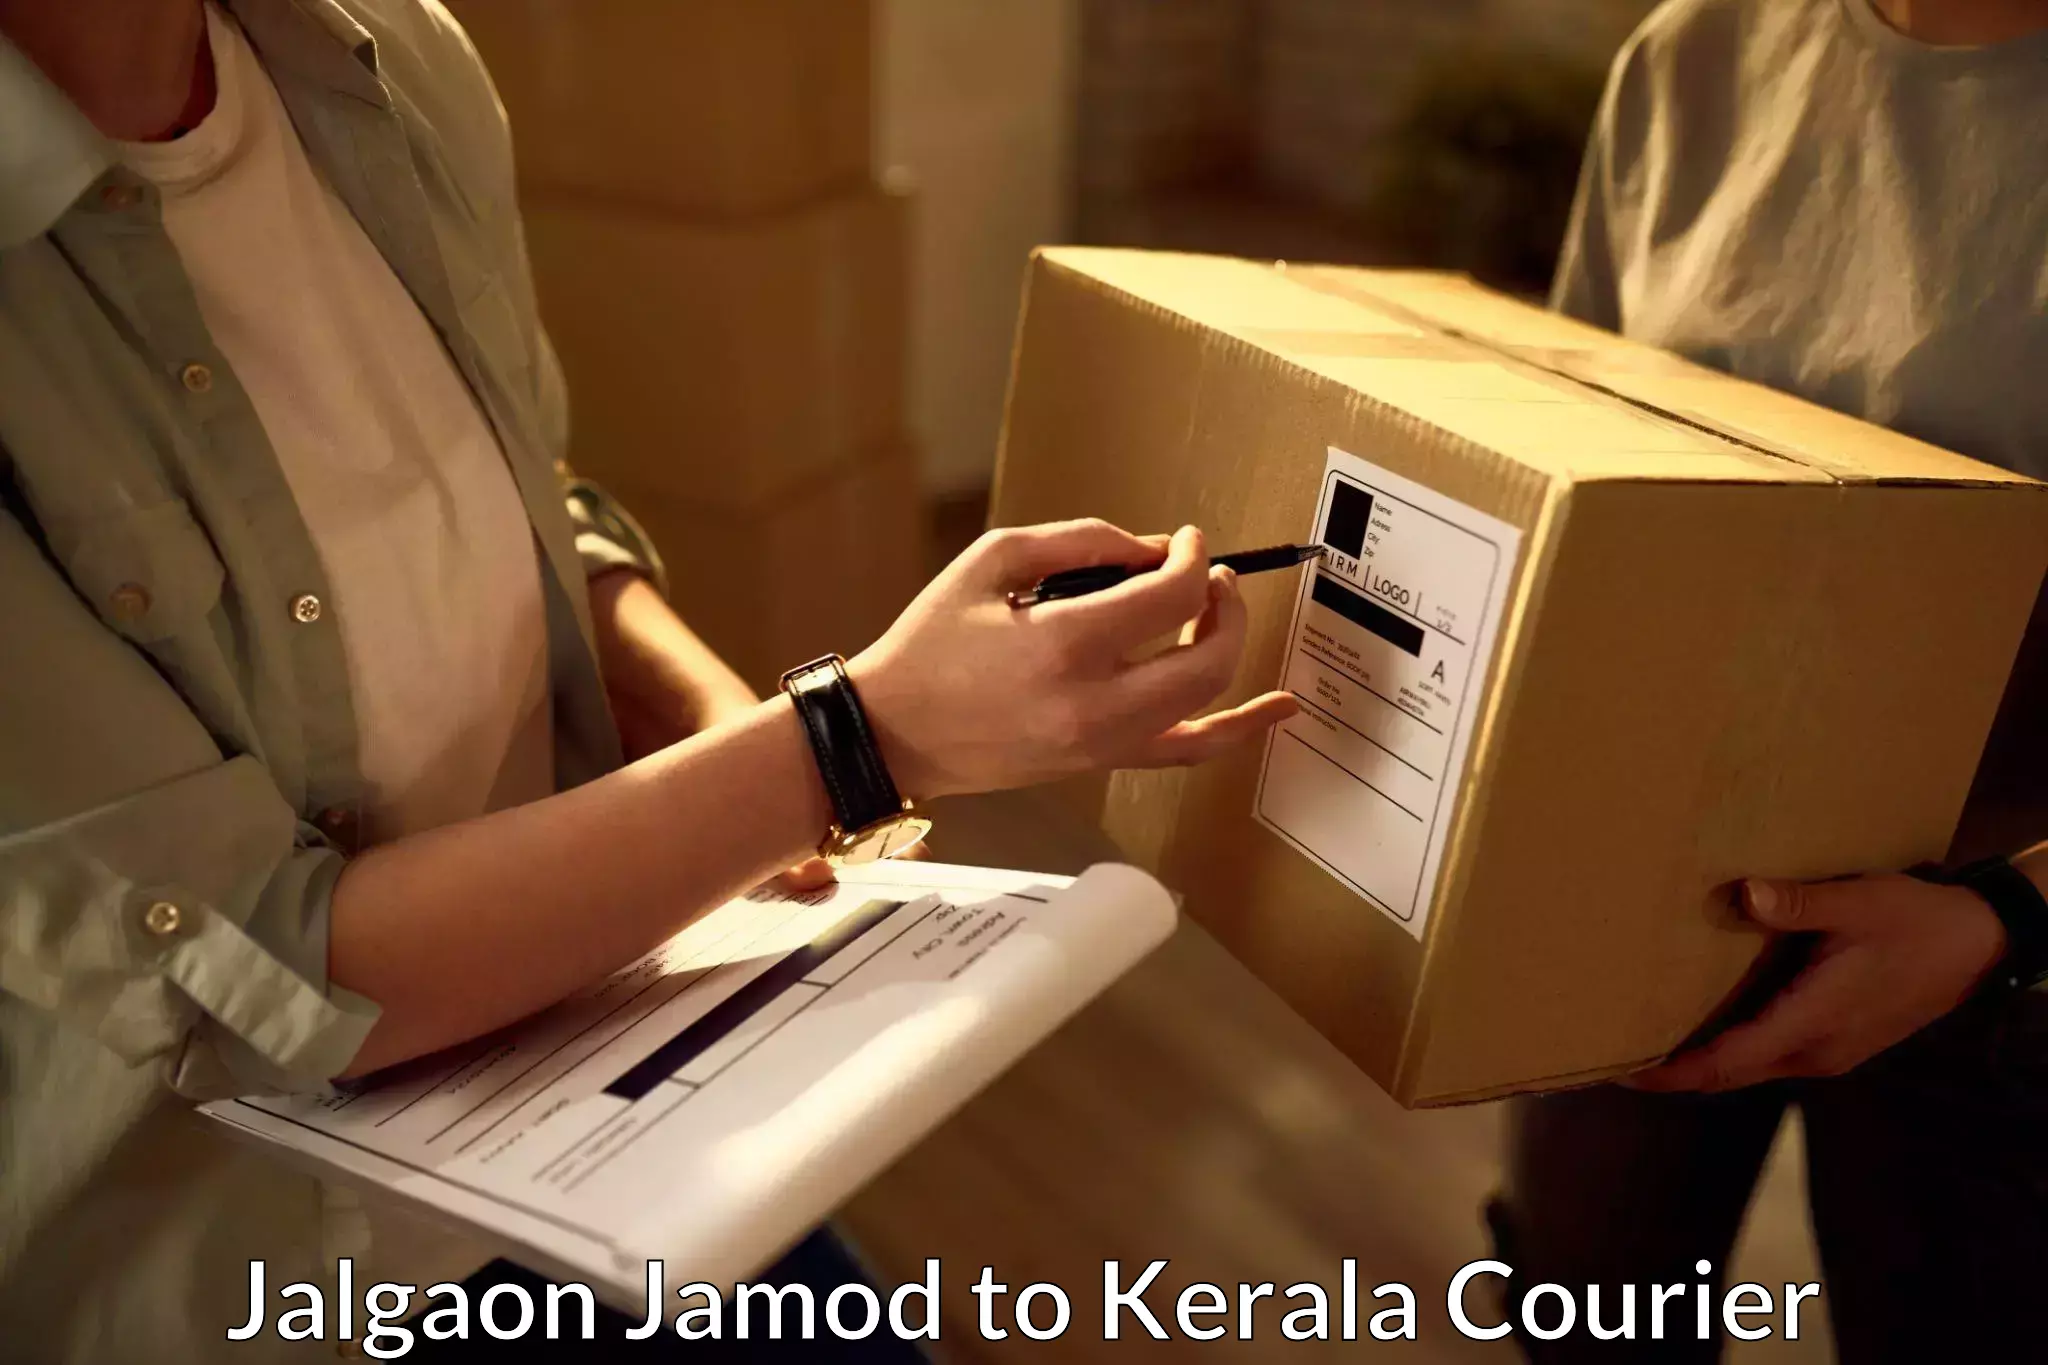 Express courier facilities Jalgaon Jamod to Calicut